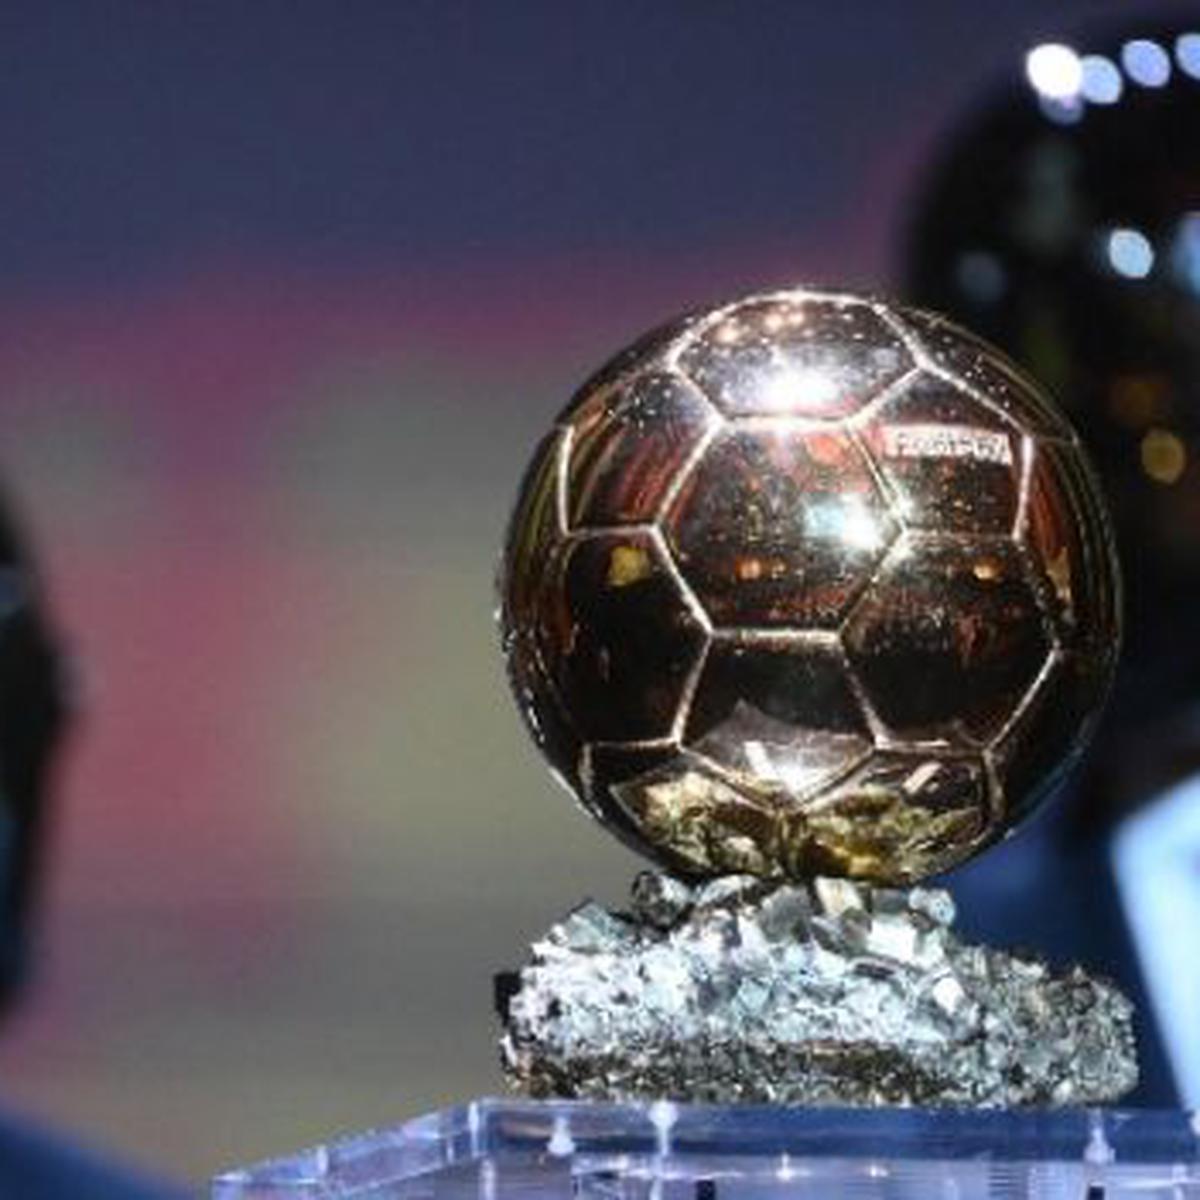 Balón de Oro 2022  Dónde se celebra la Gala: sede, país y formato